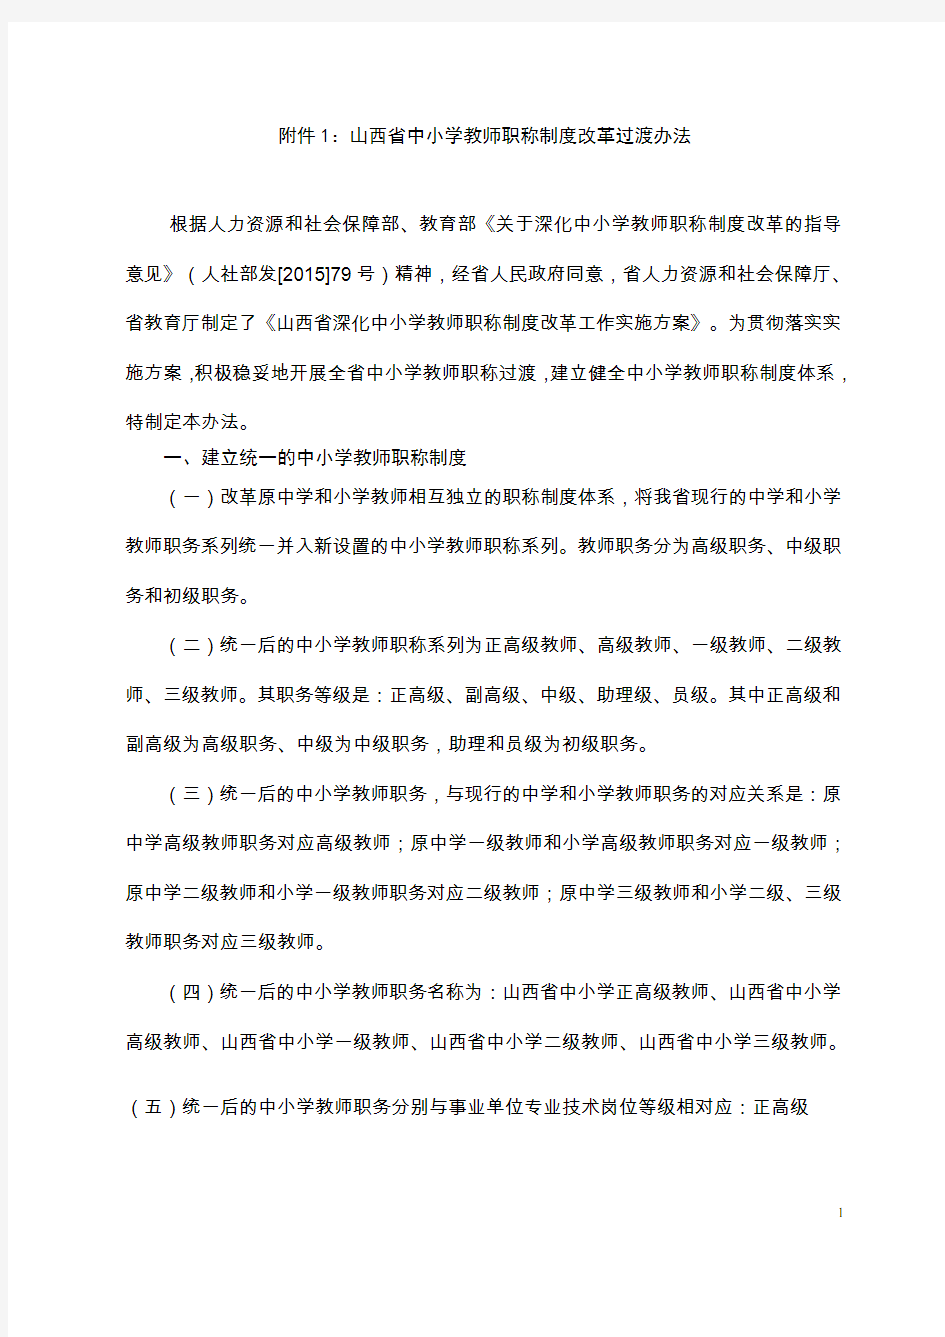 山西省中小学教师职称制度改革过渡办法